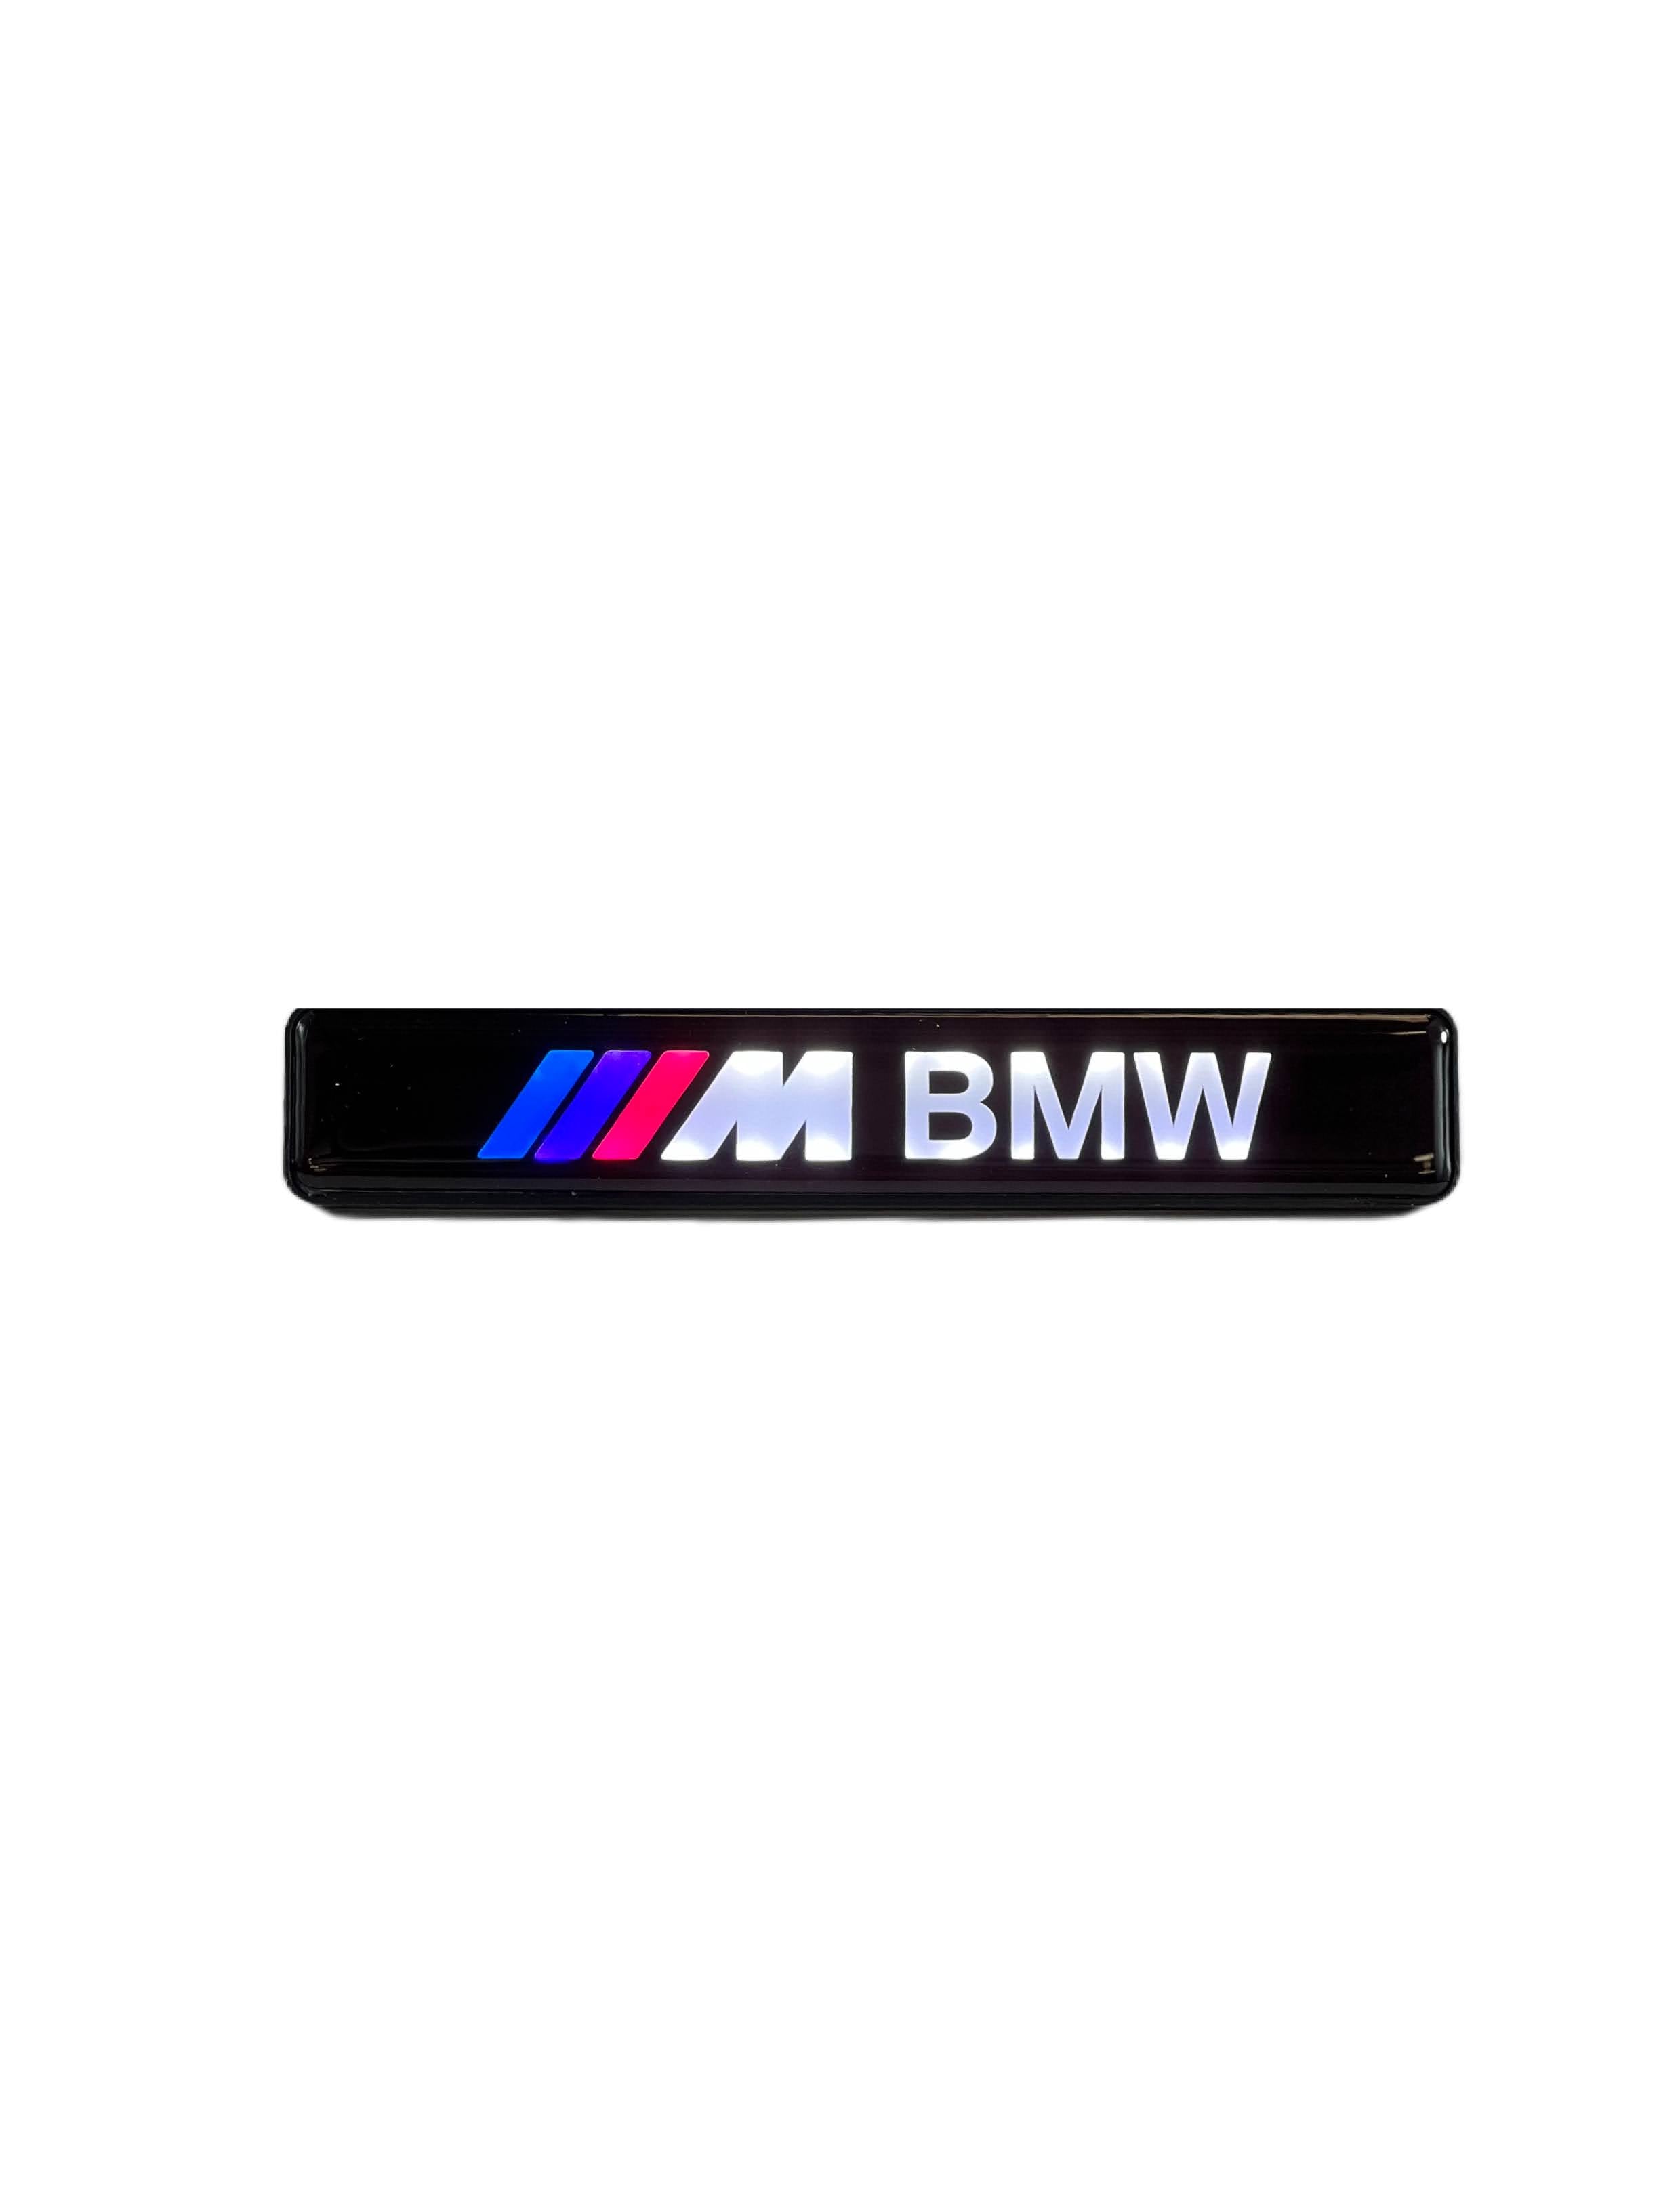 Branded LED Grille Badge: Backlit Logo For Many Makes and Models